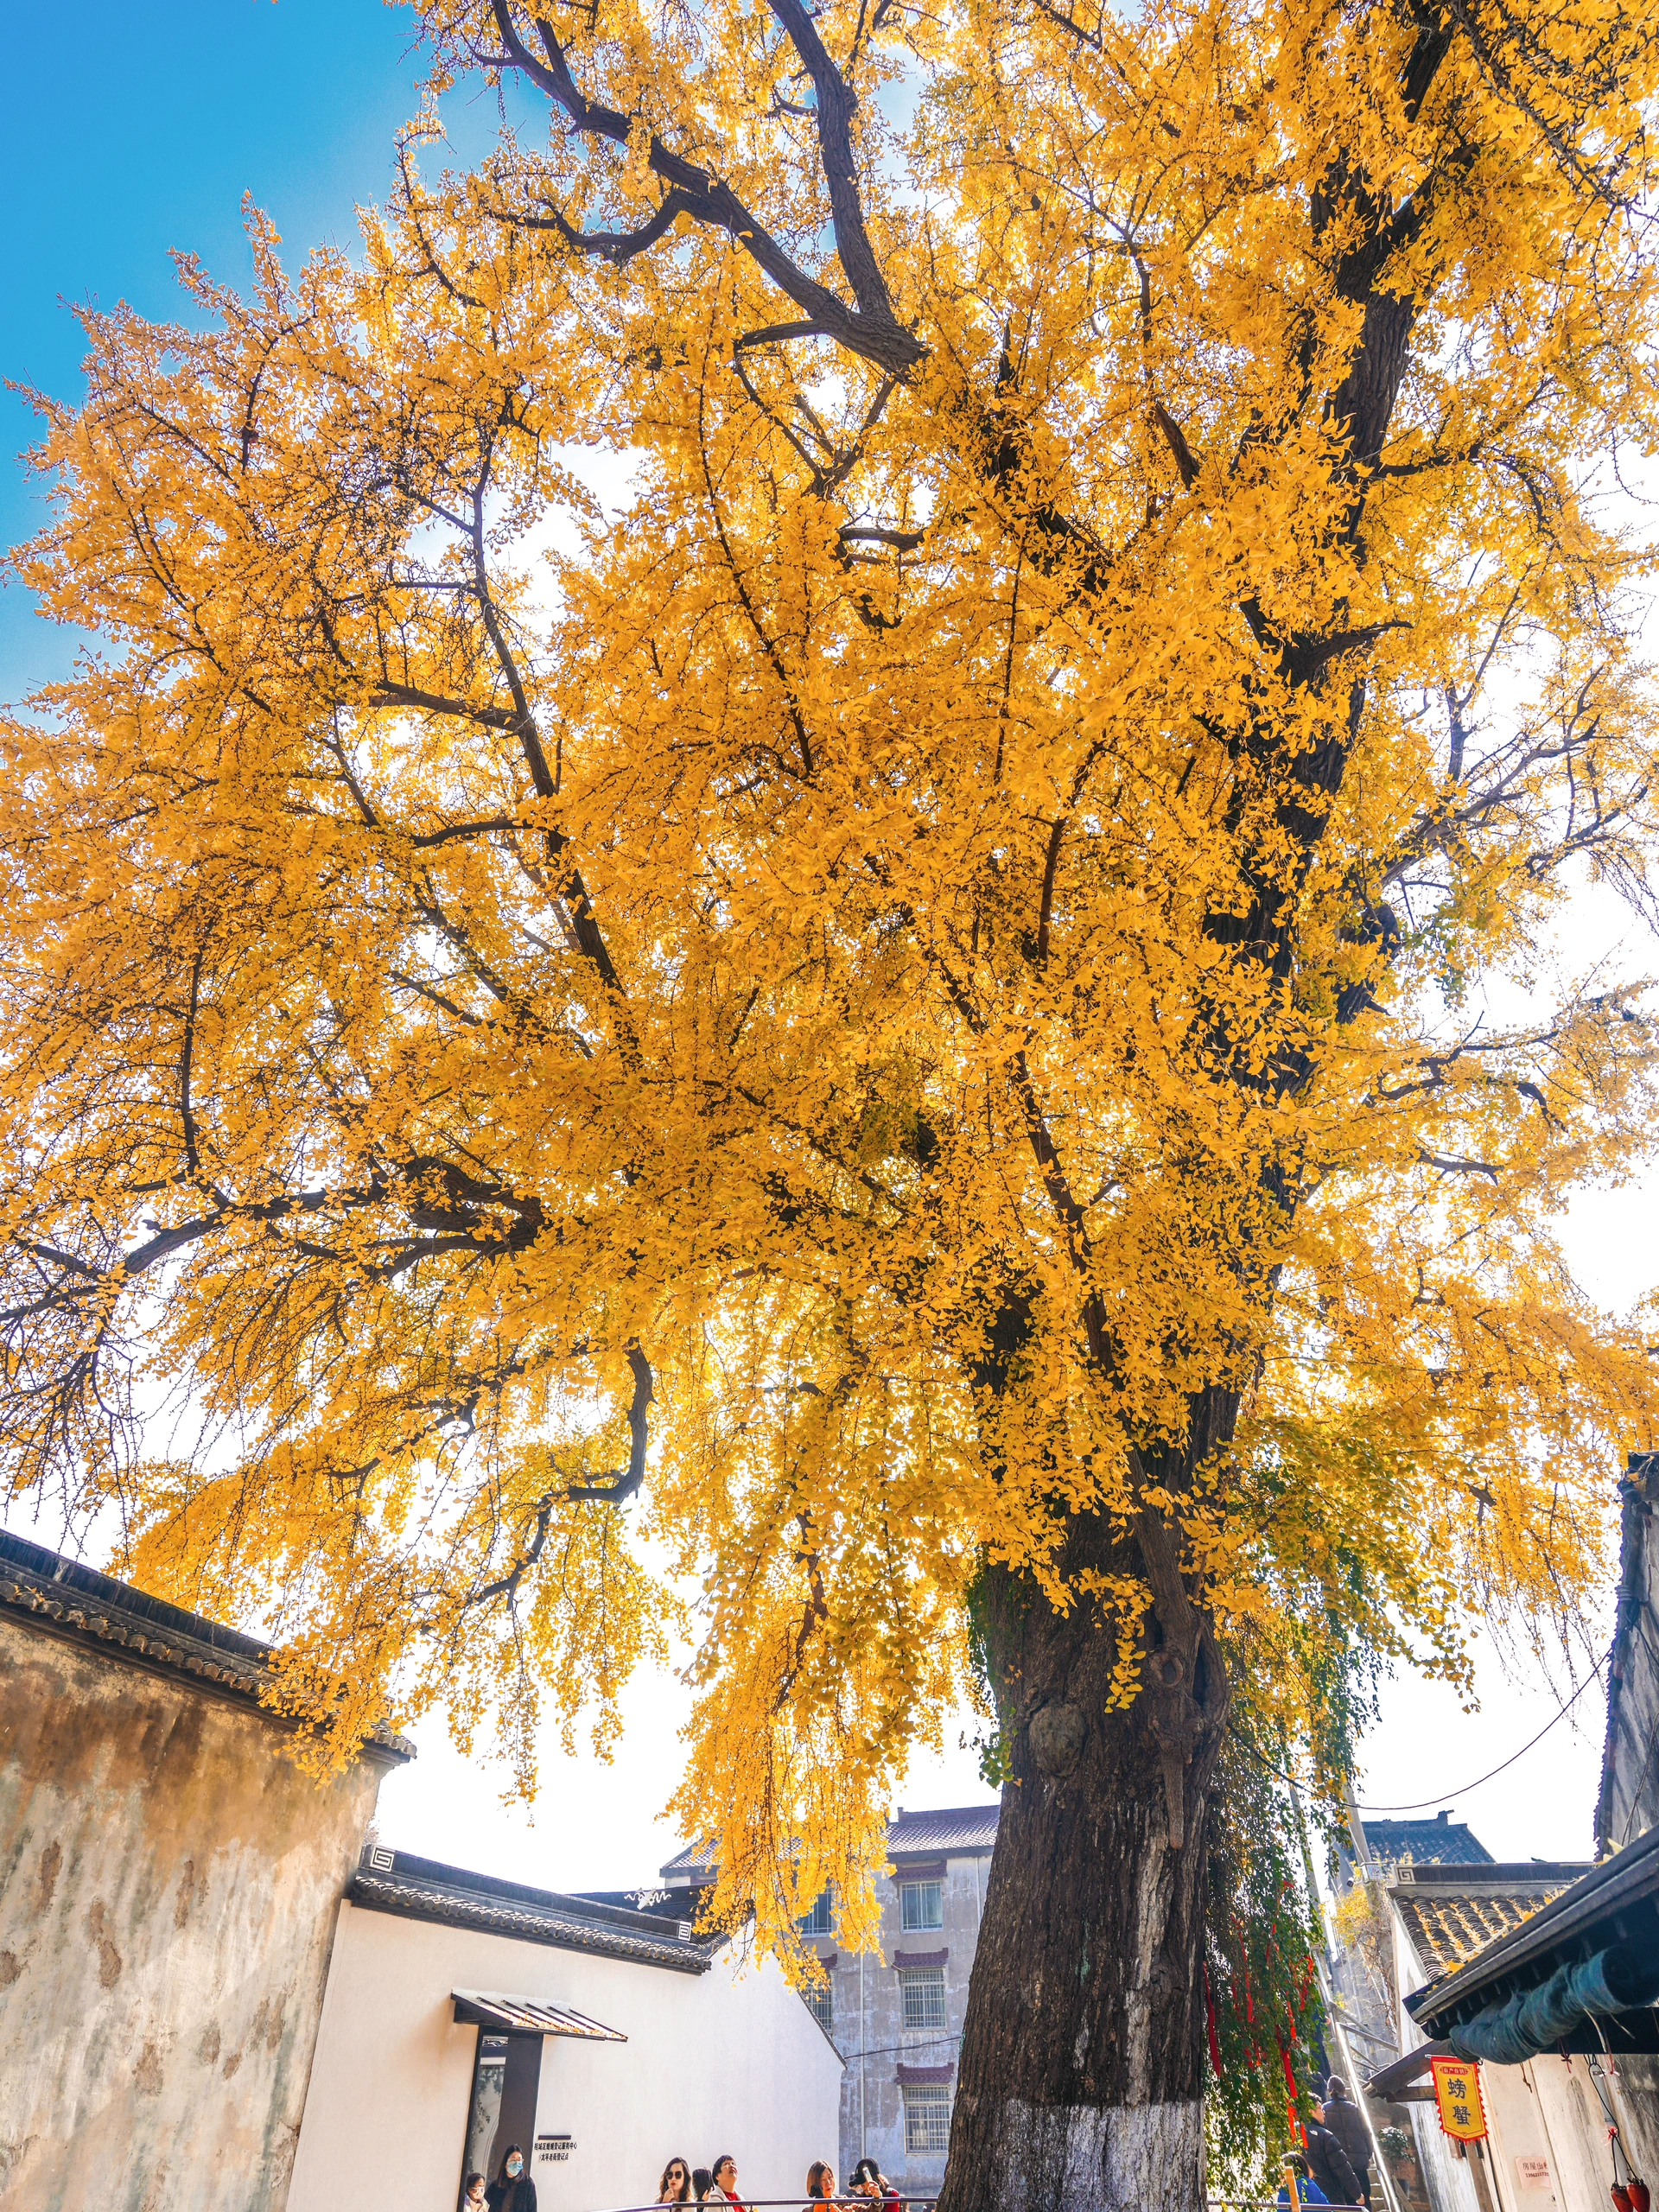 近日,苏州太平禅寺的一棵千年古银杏树在网络上引发了广泛关注